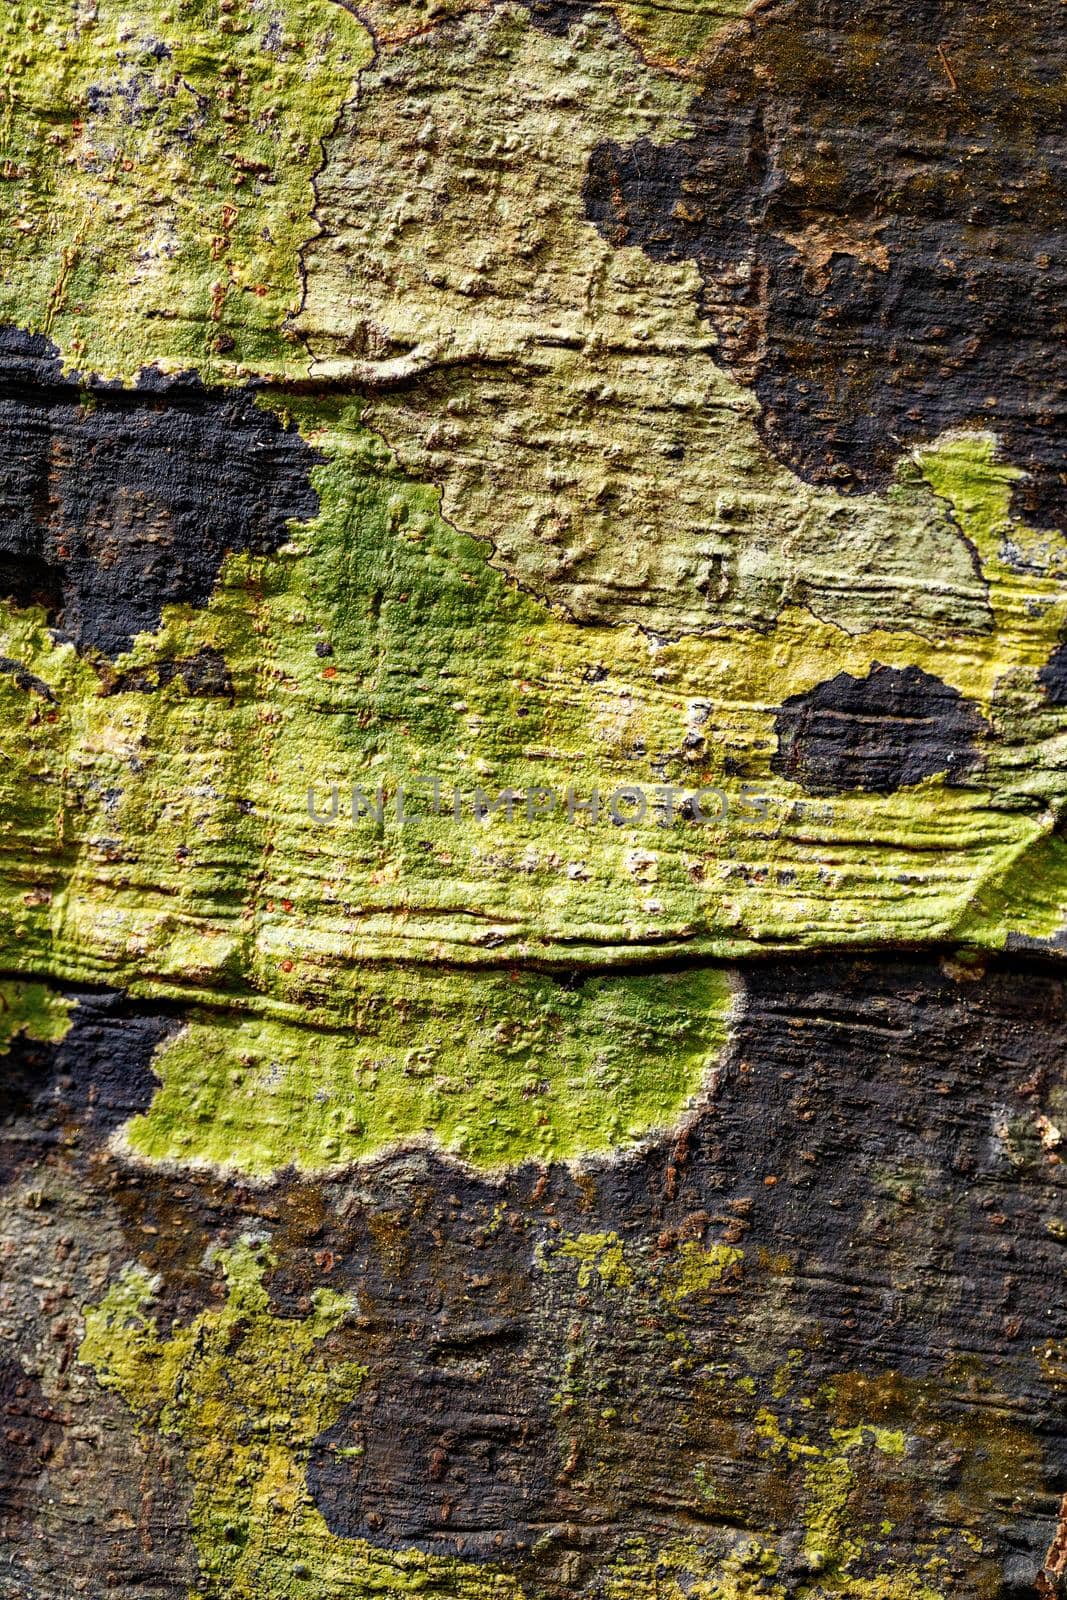 tree bark texture, pattern for background or backdrop use, Nosy mangabe, Madagascar tree